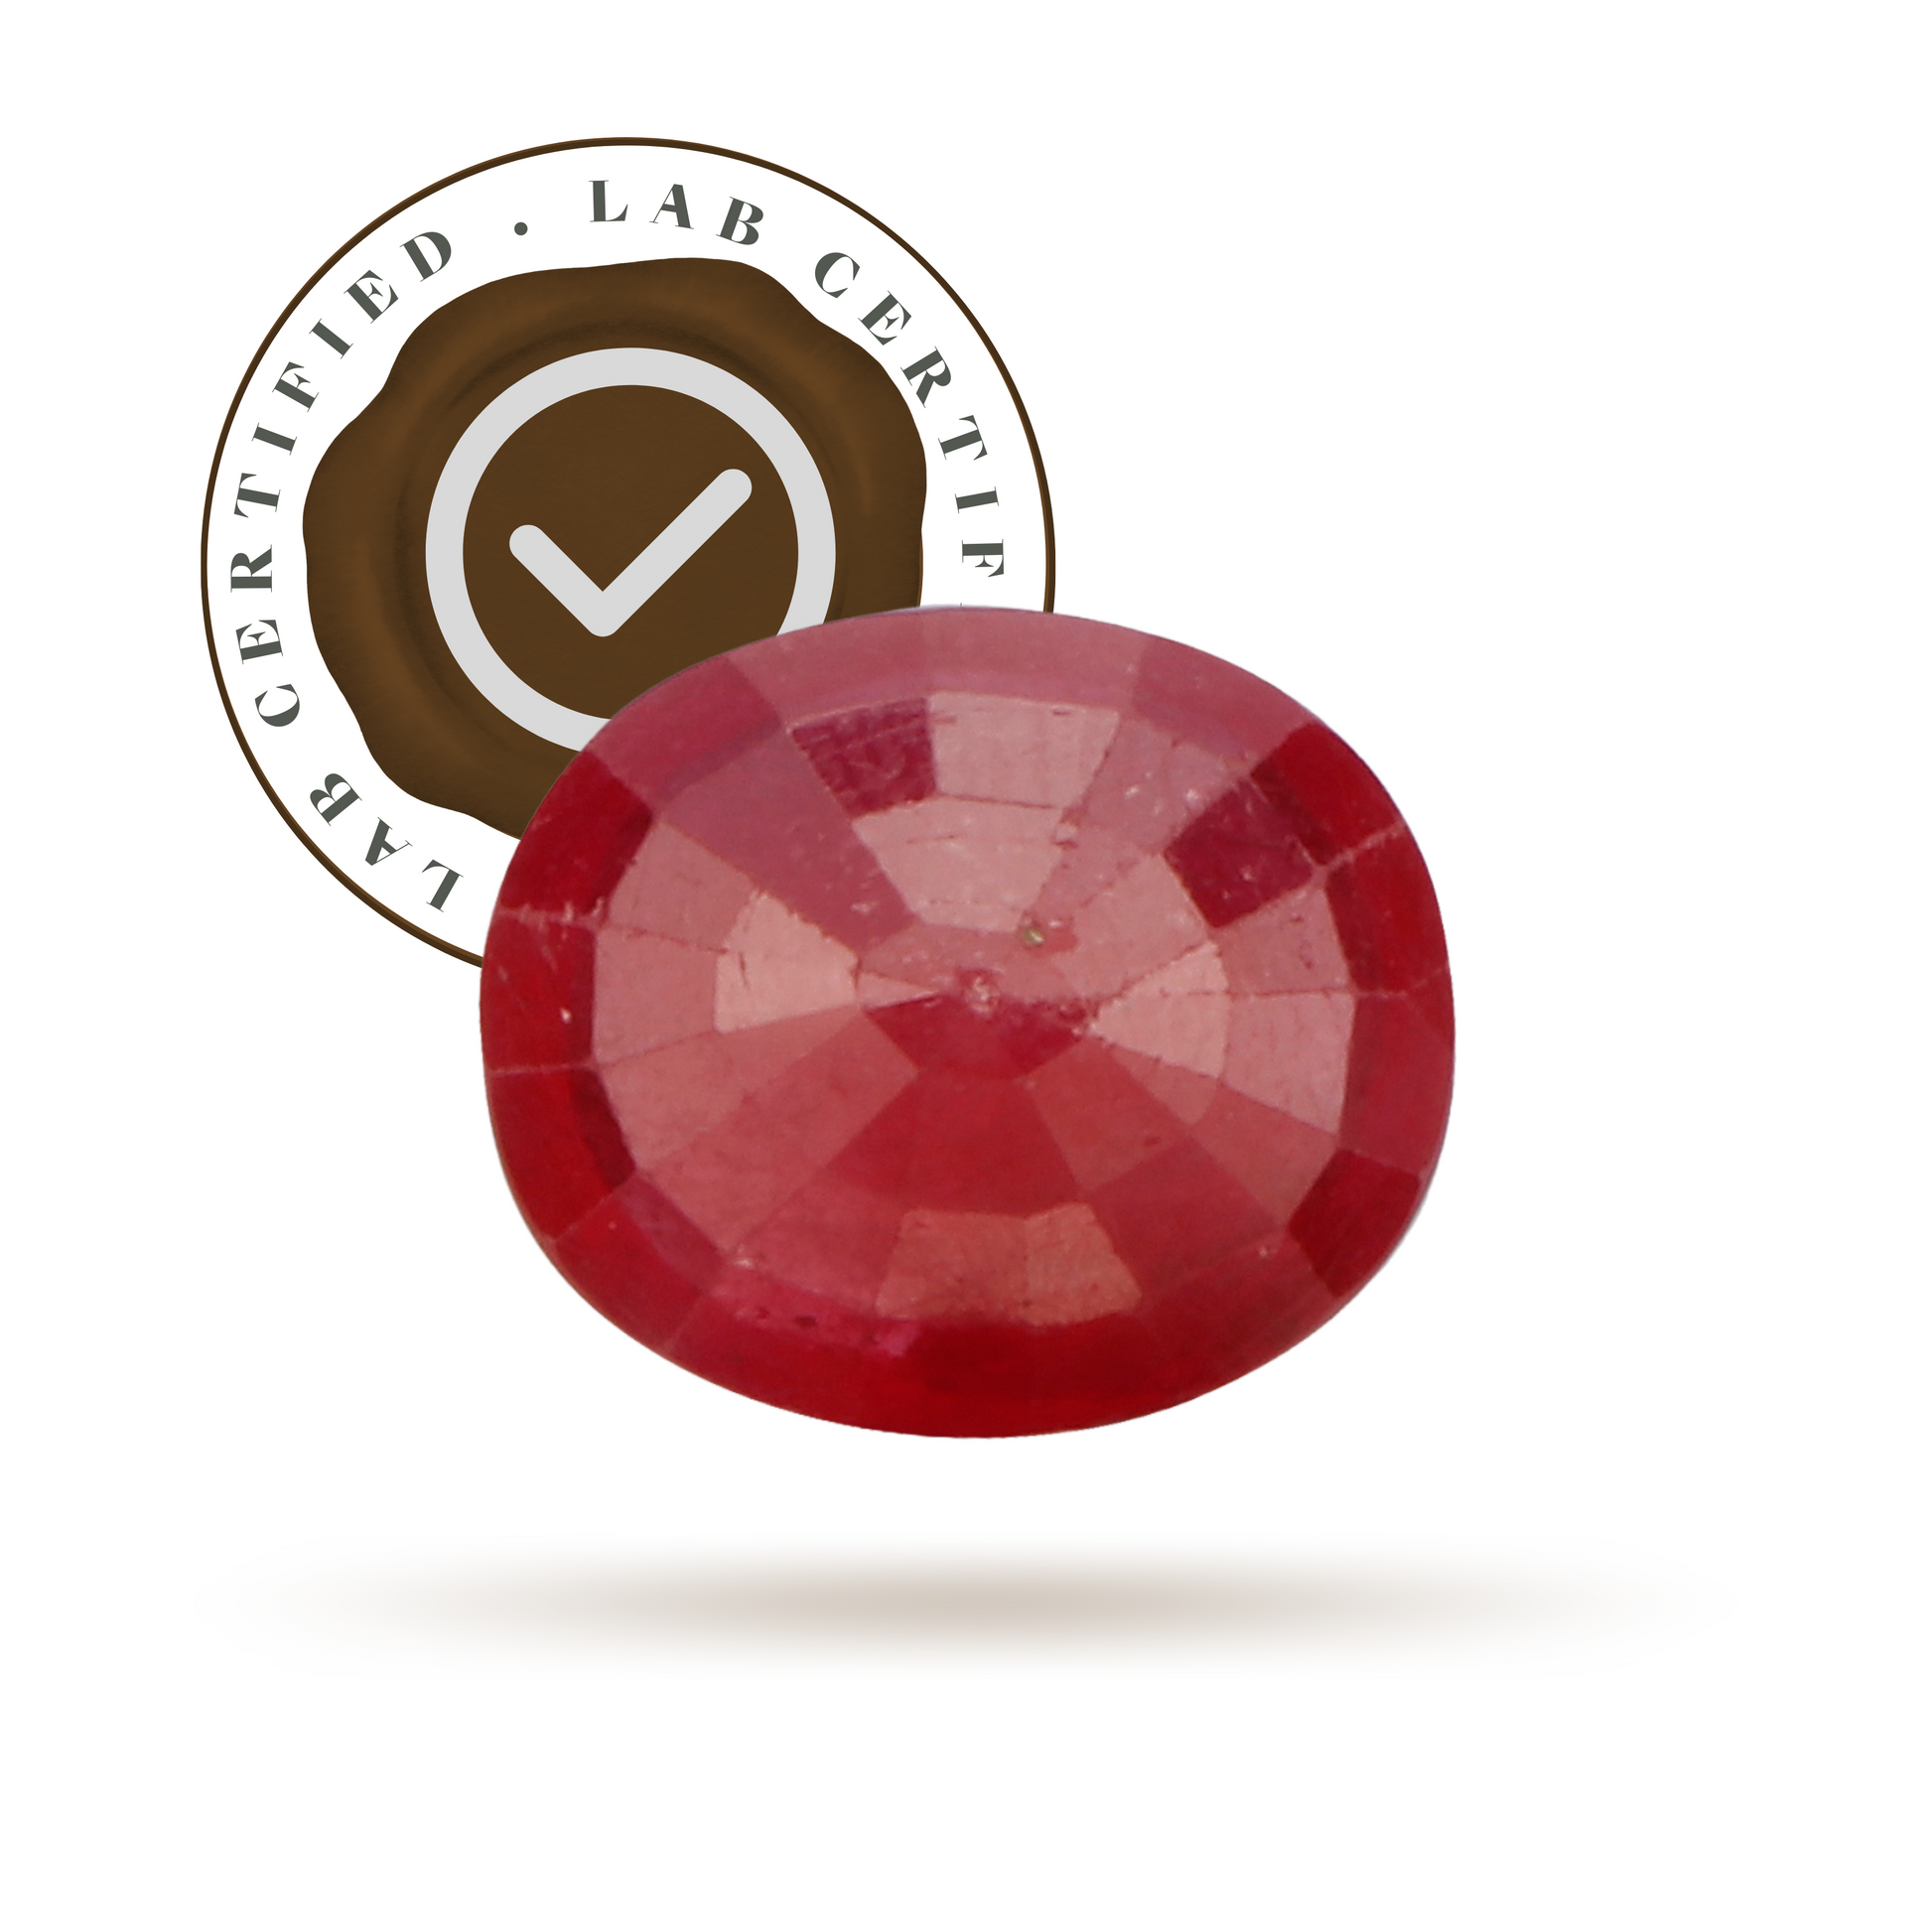 Ruby (Manik) Premium - 10 Ratti-Gemsmantra-best-online-gems-shop-in-india